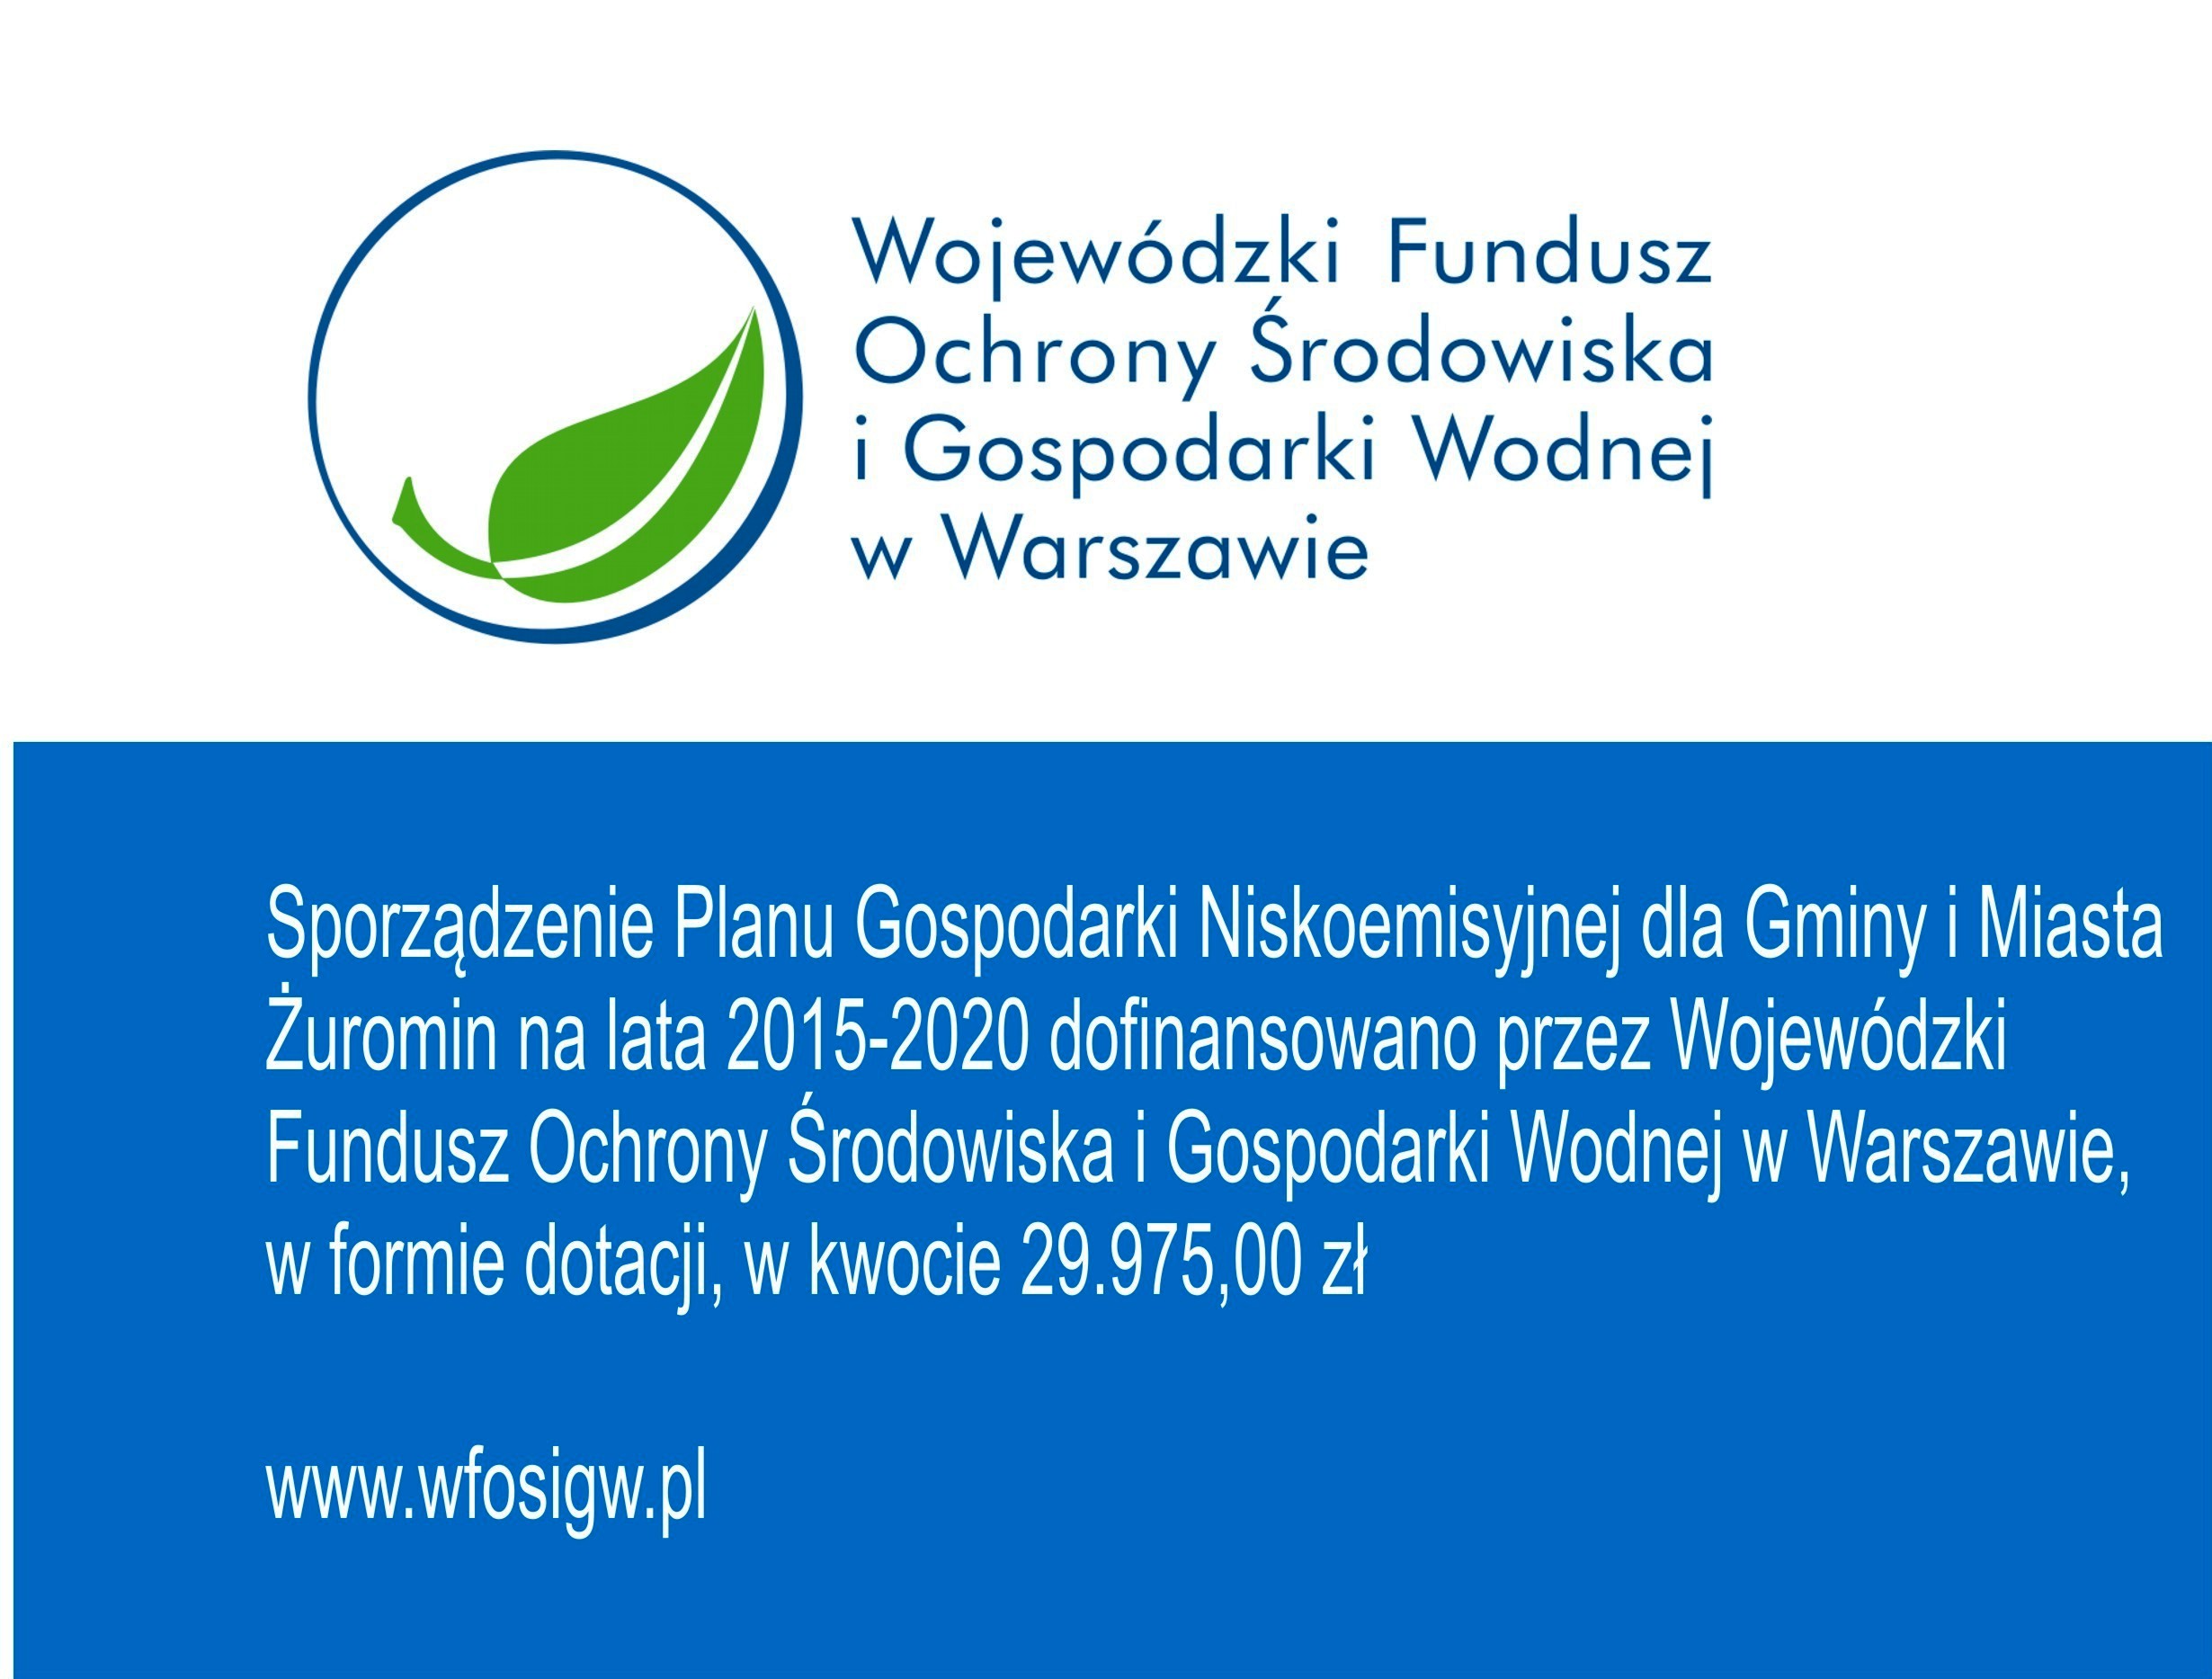 WFOŚiGW dofinansował sporządzenie Planu Gospodarki Niskoemisyjnej dla Gminy i Miasta Żuromin na lata 2015-2020